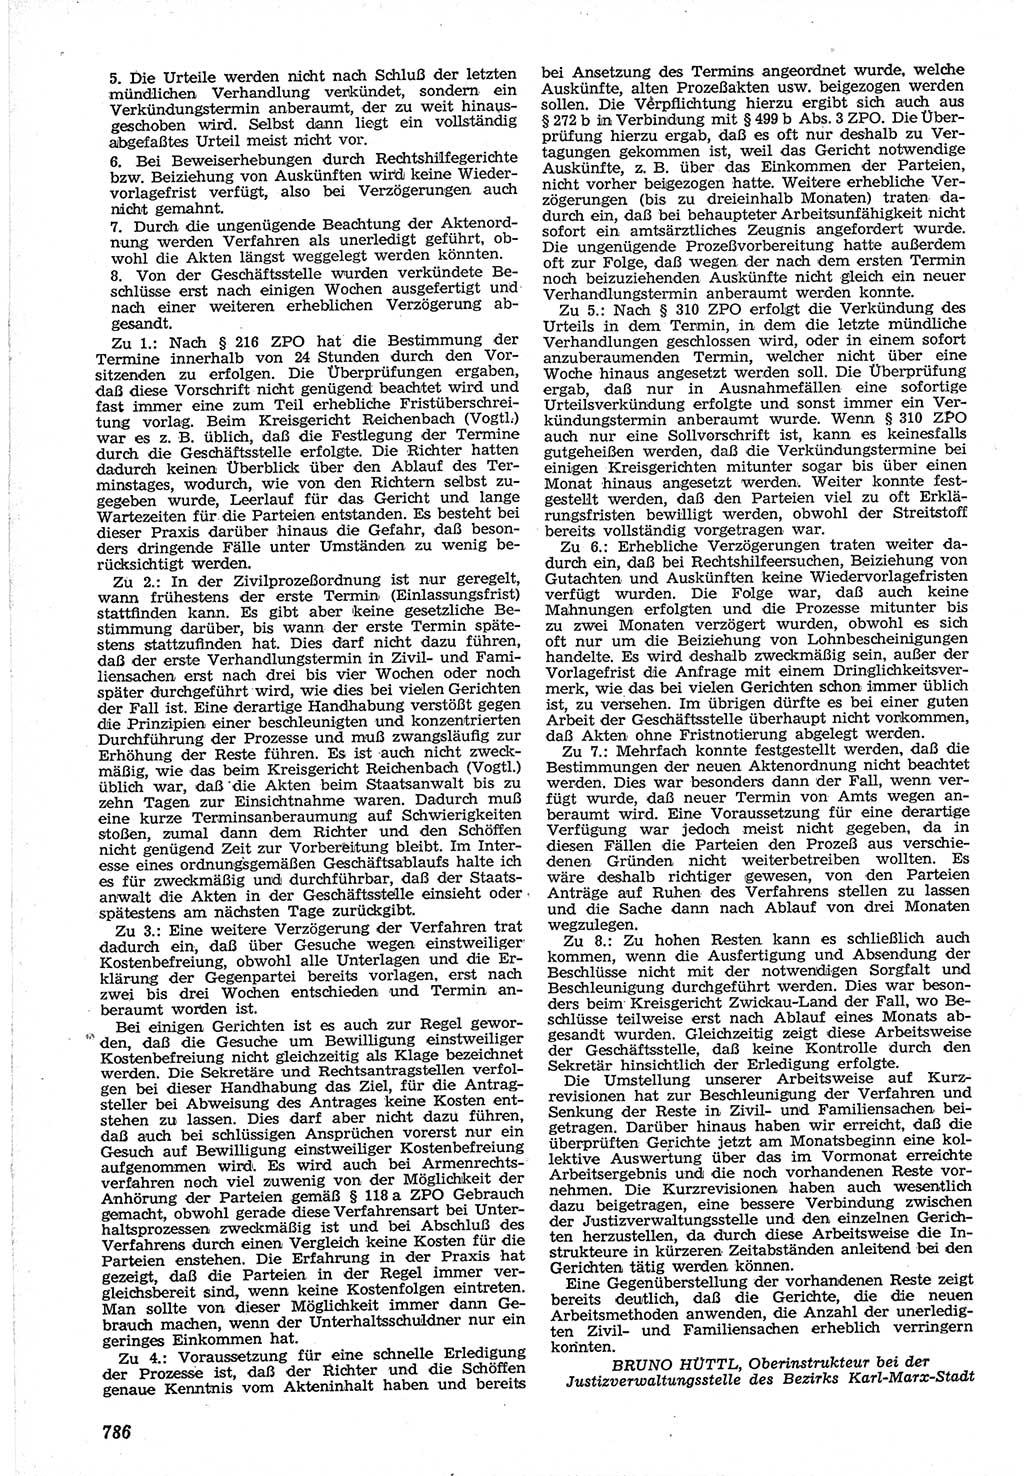 Neue Justiz (NJ), Zeitschrift für Recht und Rechtswissenschaft [Deutsche Demokratische Republik (DDR)], 12. Jahrgang 1958, Seite 786 (NJ DDR 1958, S. 786)